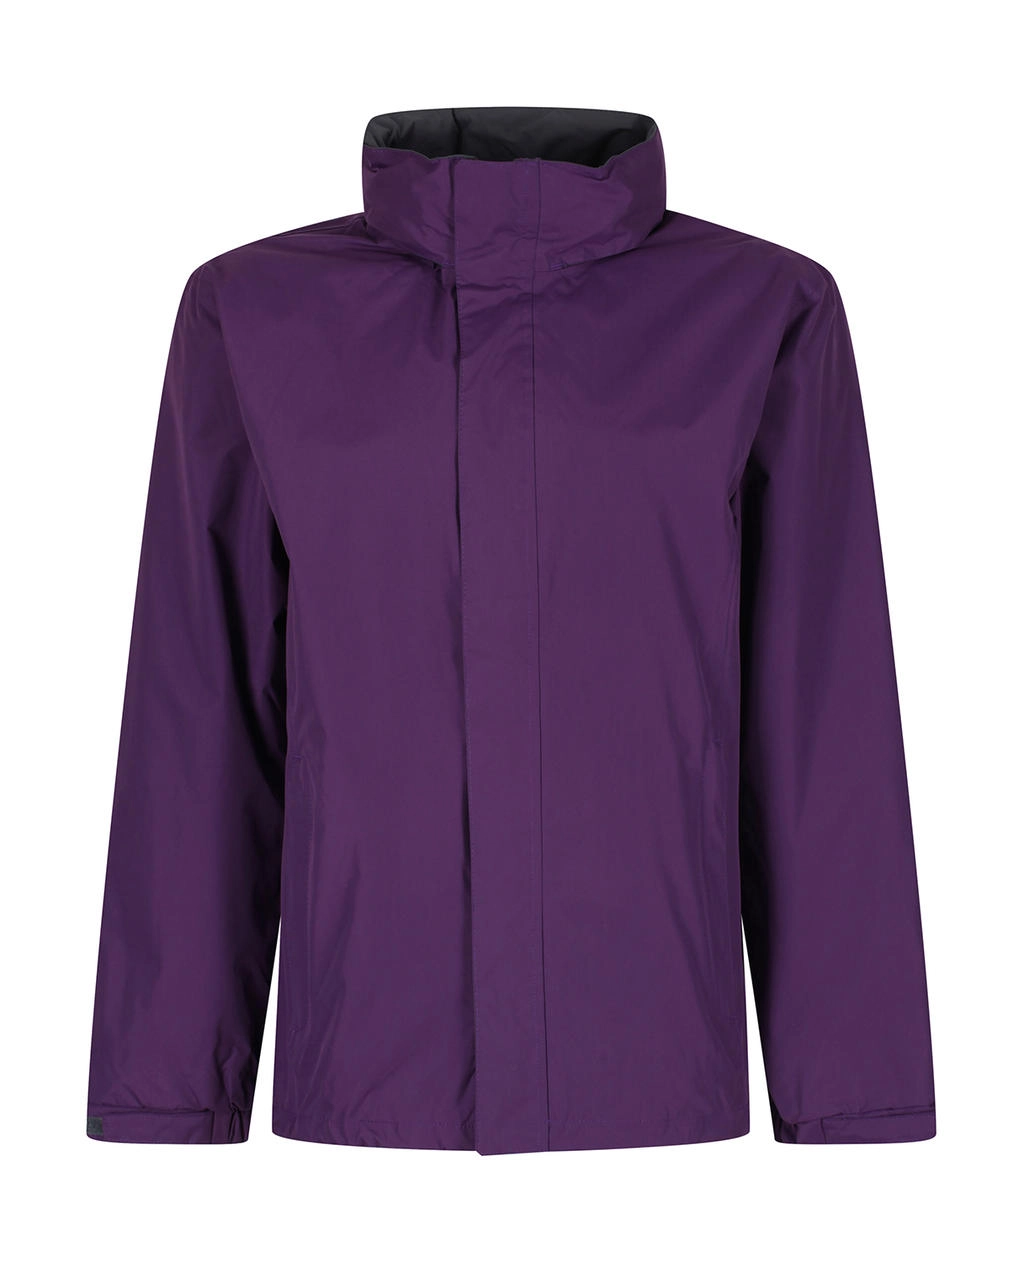 Ardmore Jacket zum Besticken und Bedrucken in der Farbe Majestic Purple/Seal Grey mit Ihren Logo, Schriftzug oder Motiv.